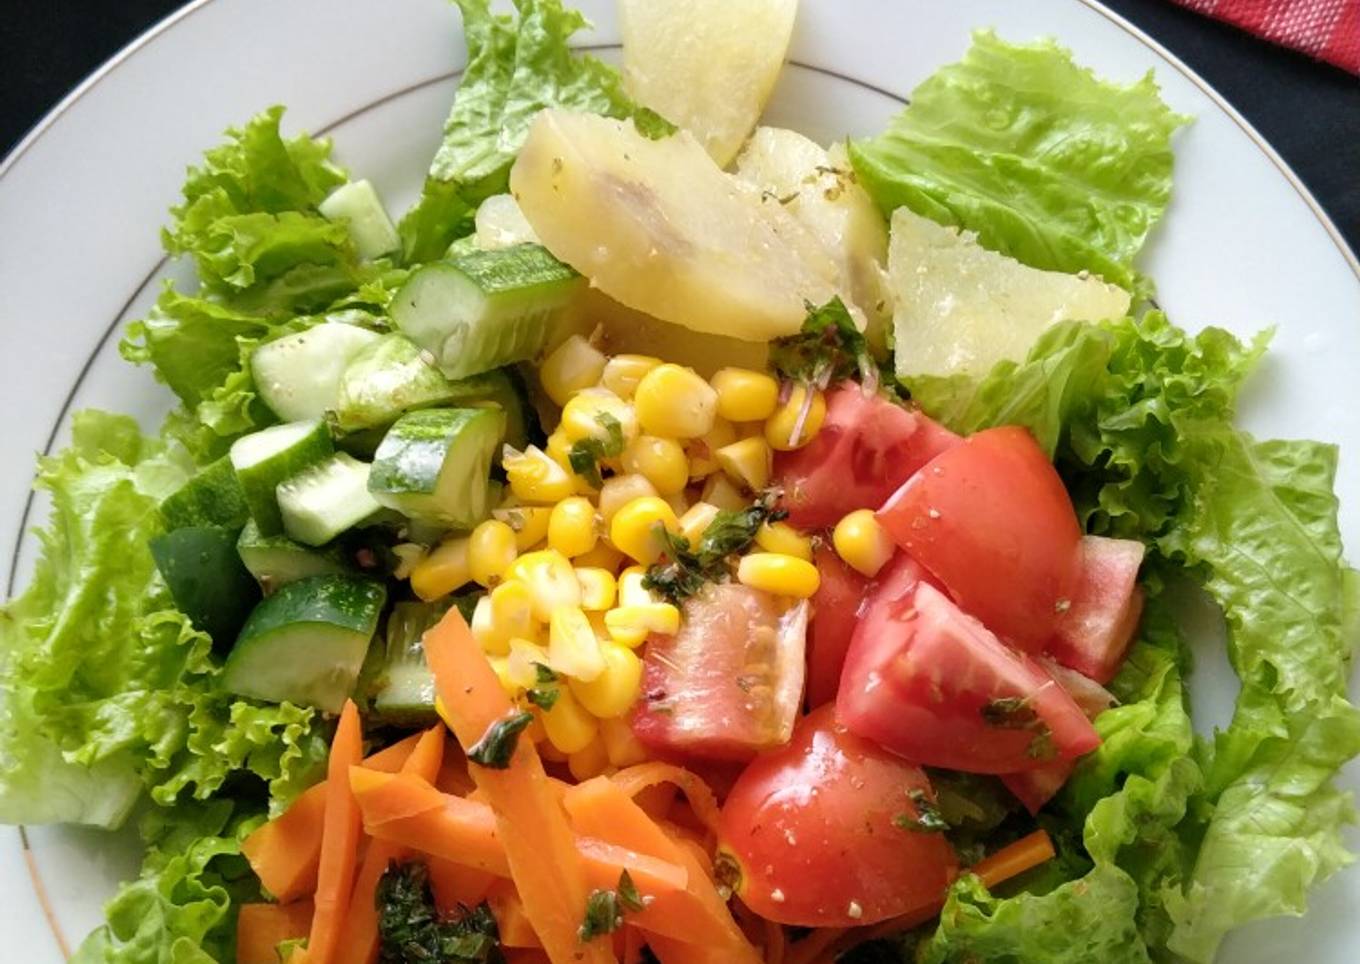 Salad sayur with balsamic dressing (sehat dan lezat)